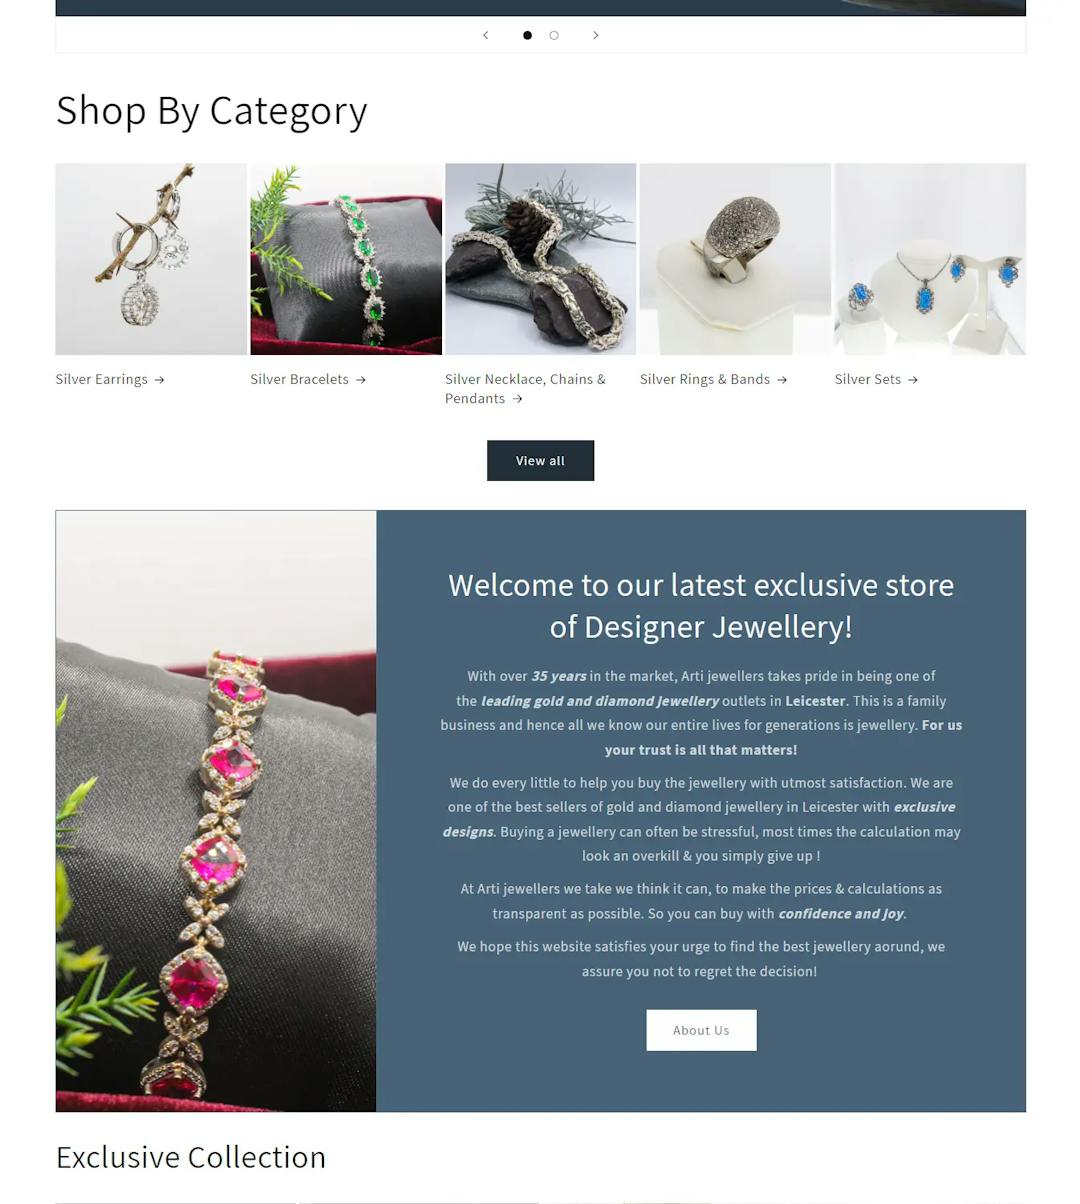 arti-jewellers-homepage.webp